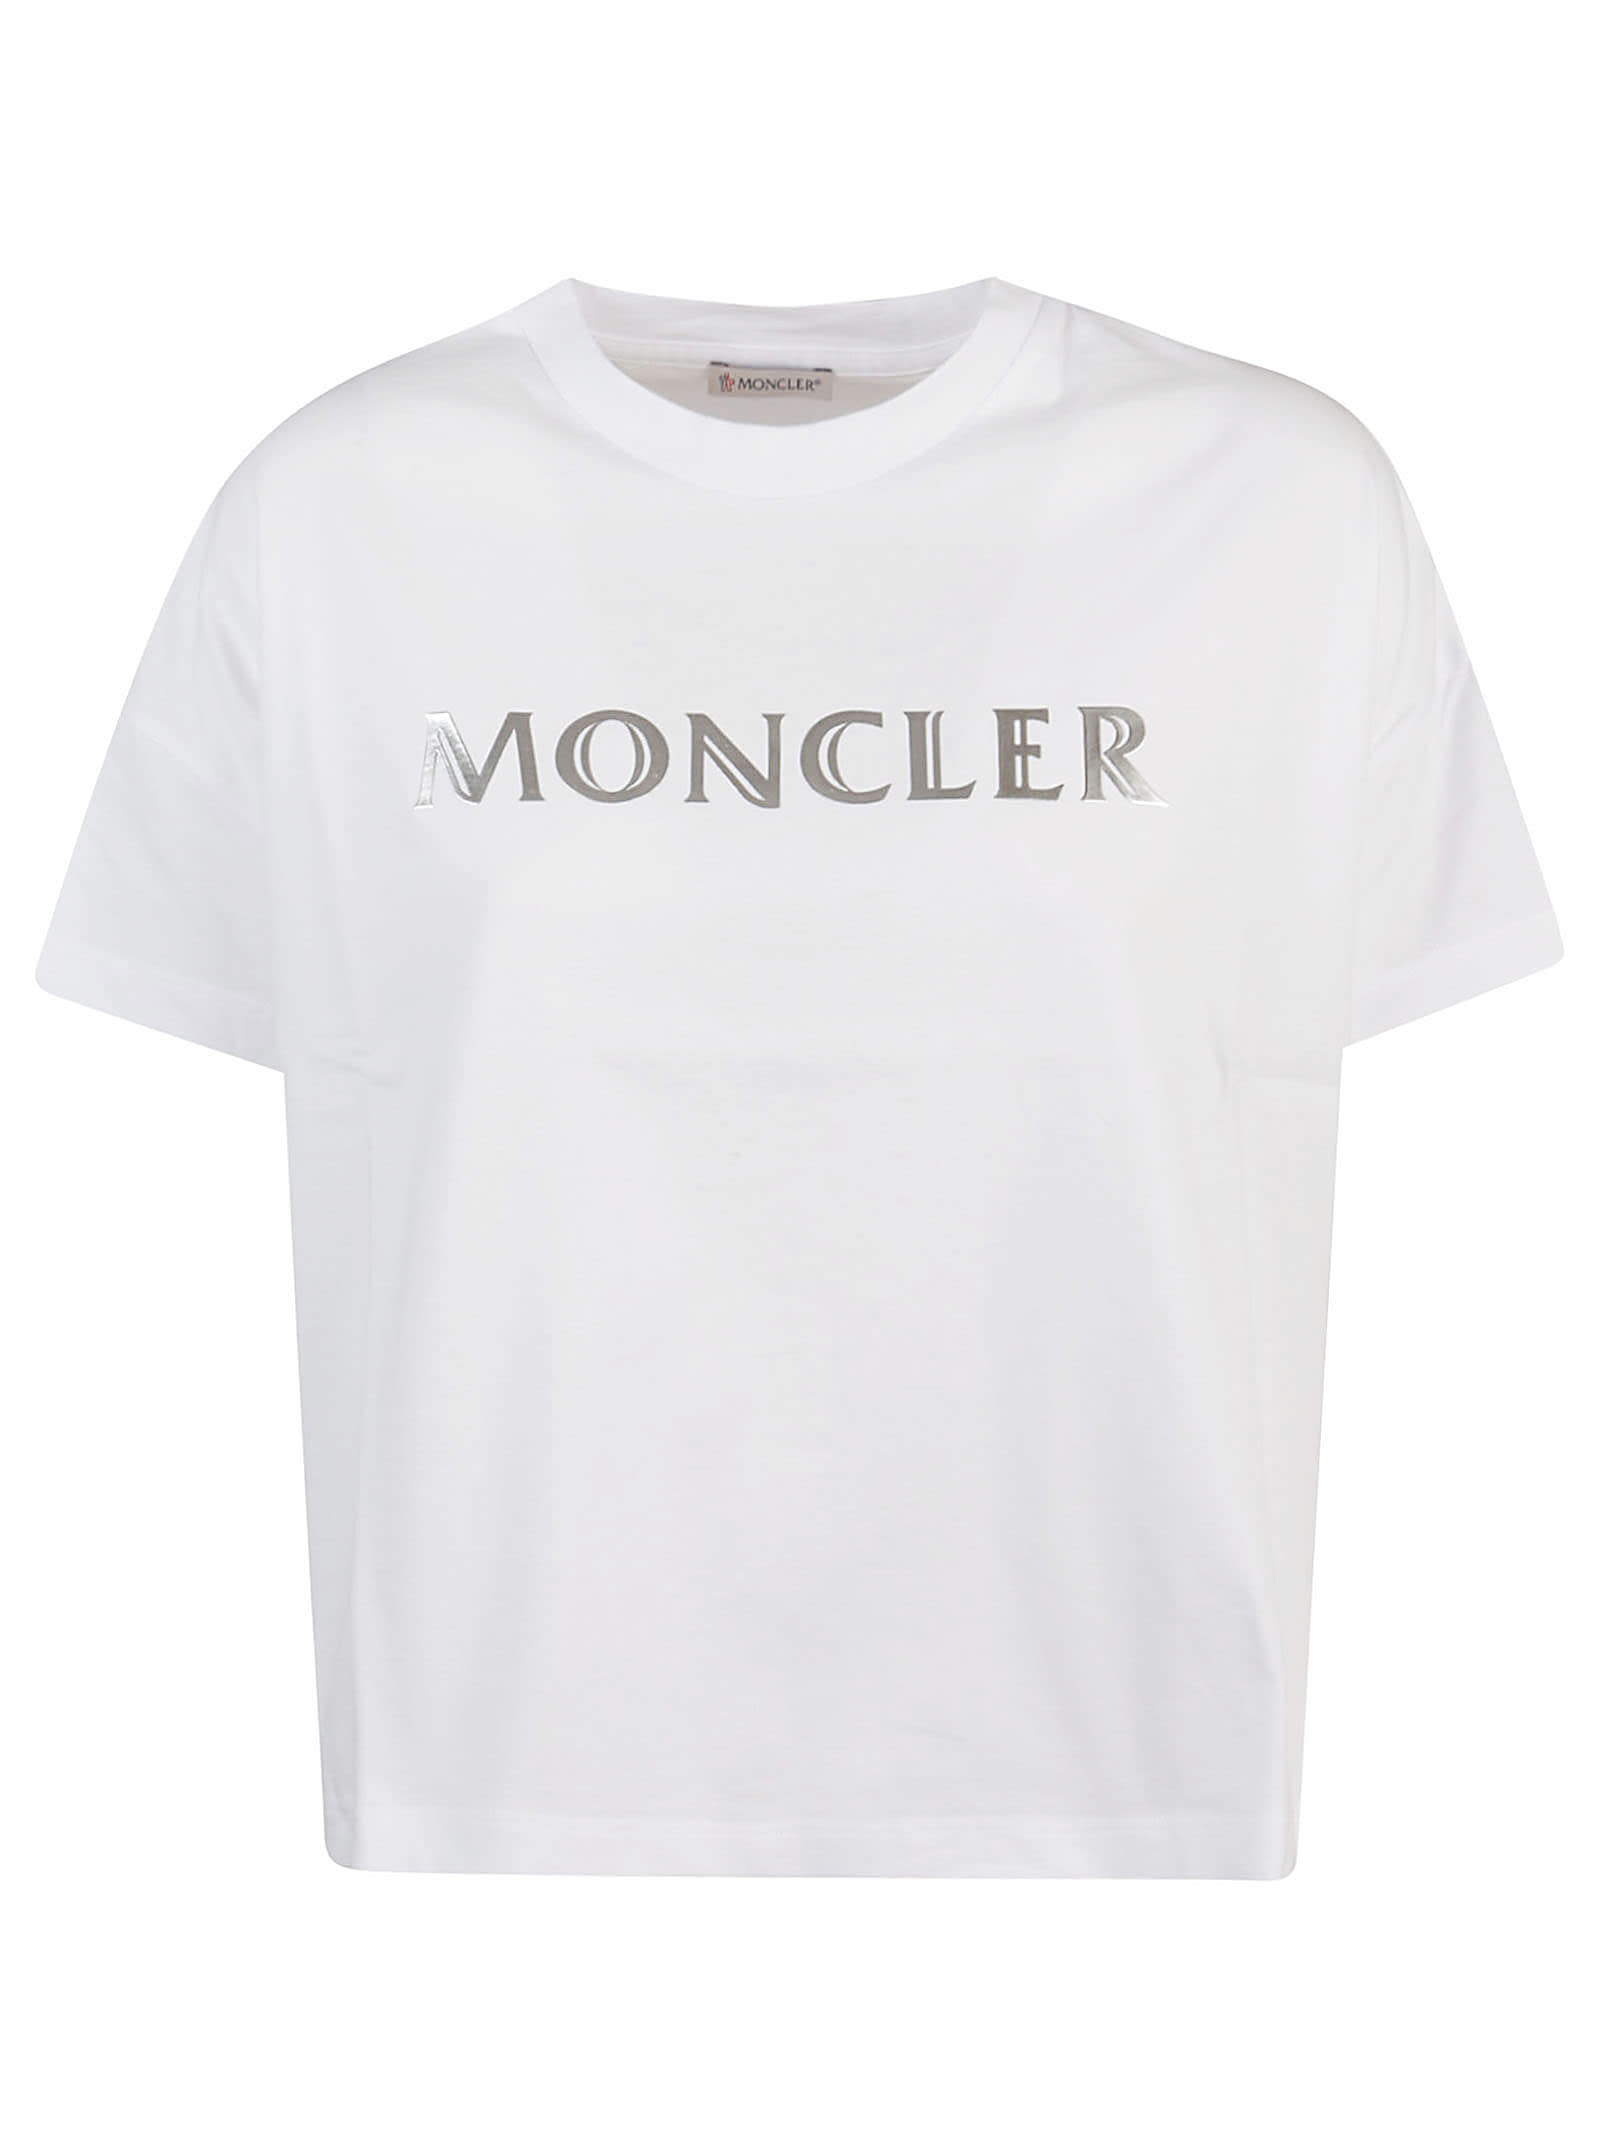 moncler top sale